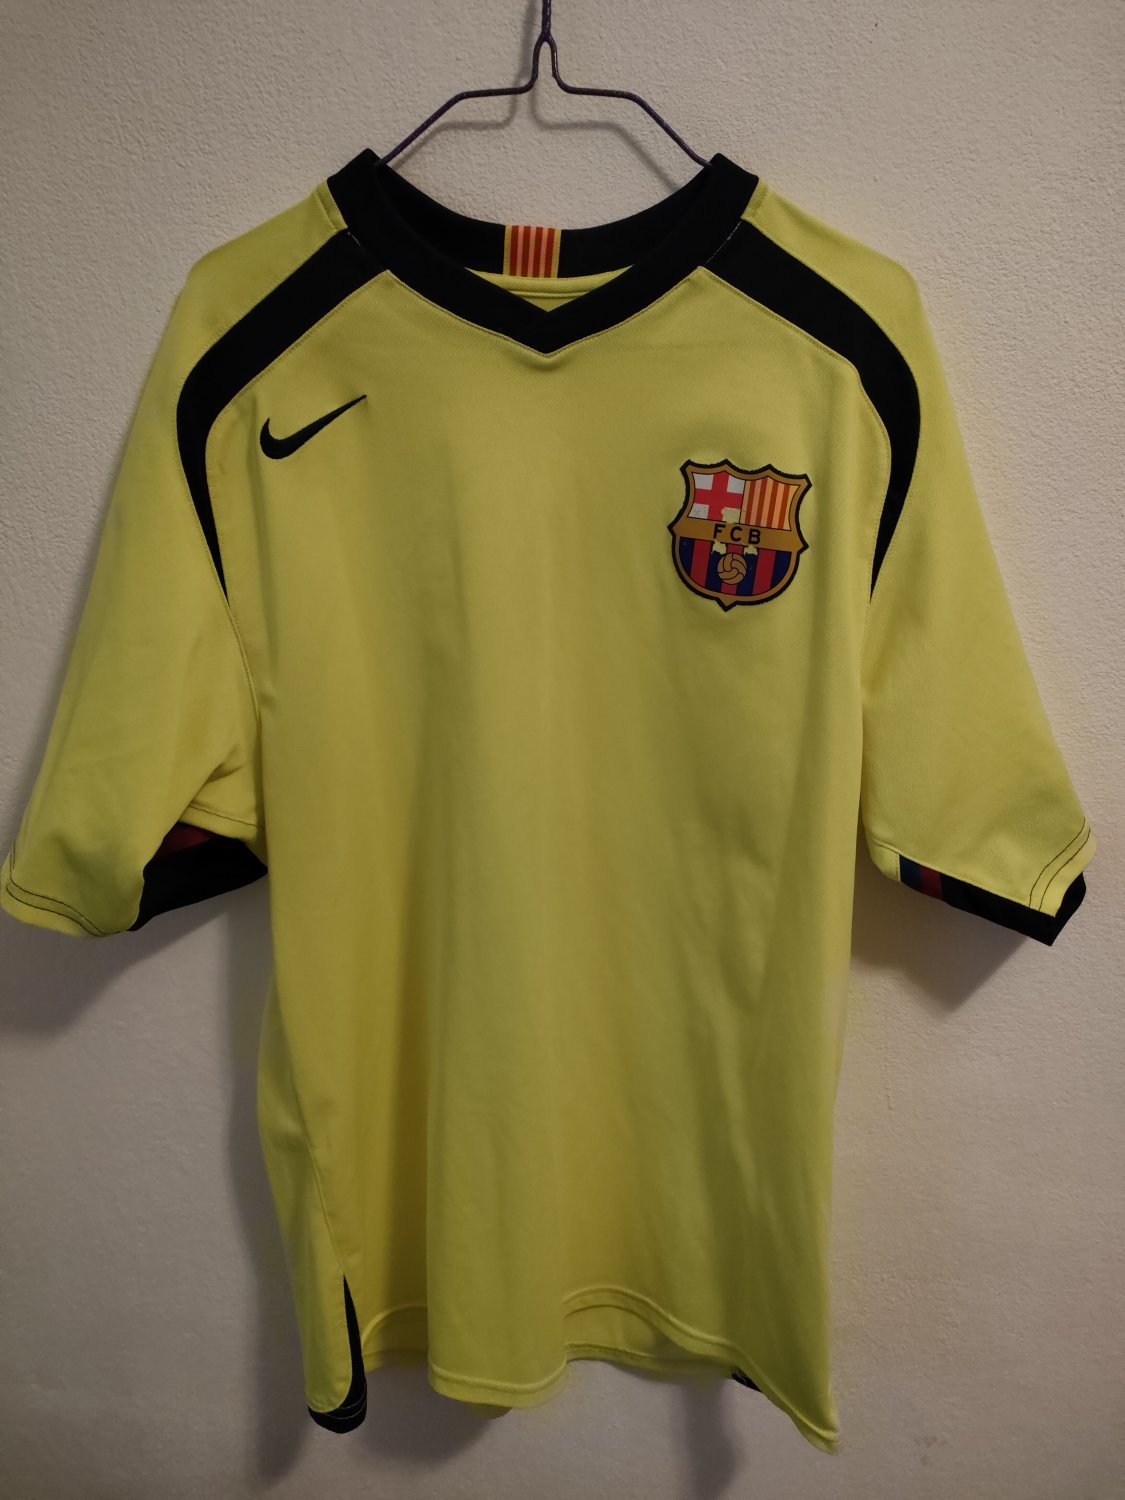 Barcelona Maglia da trasferta maglia di calcio 2005 - 2006.